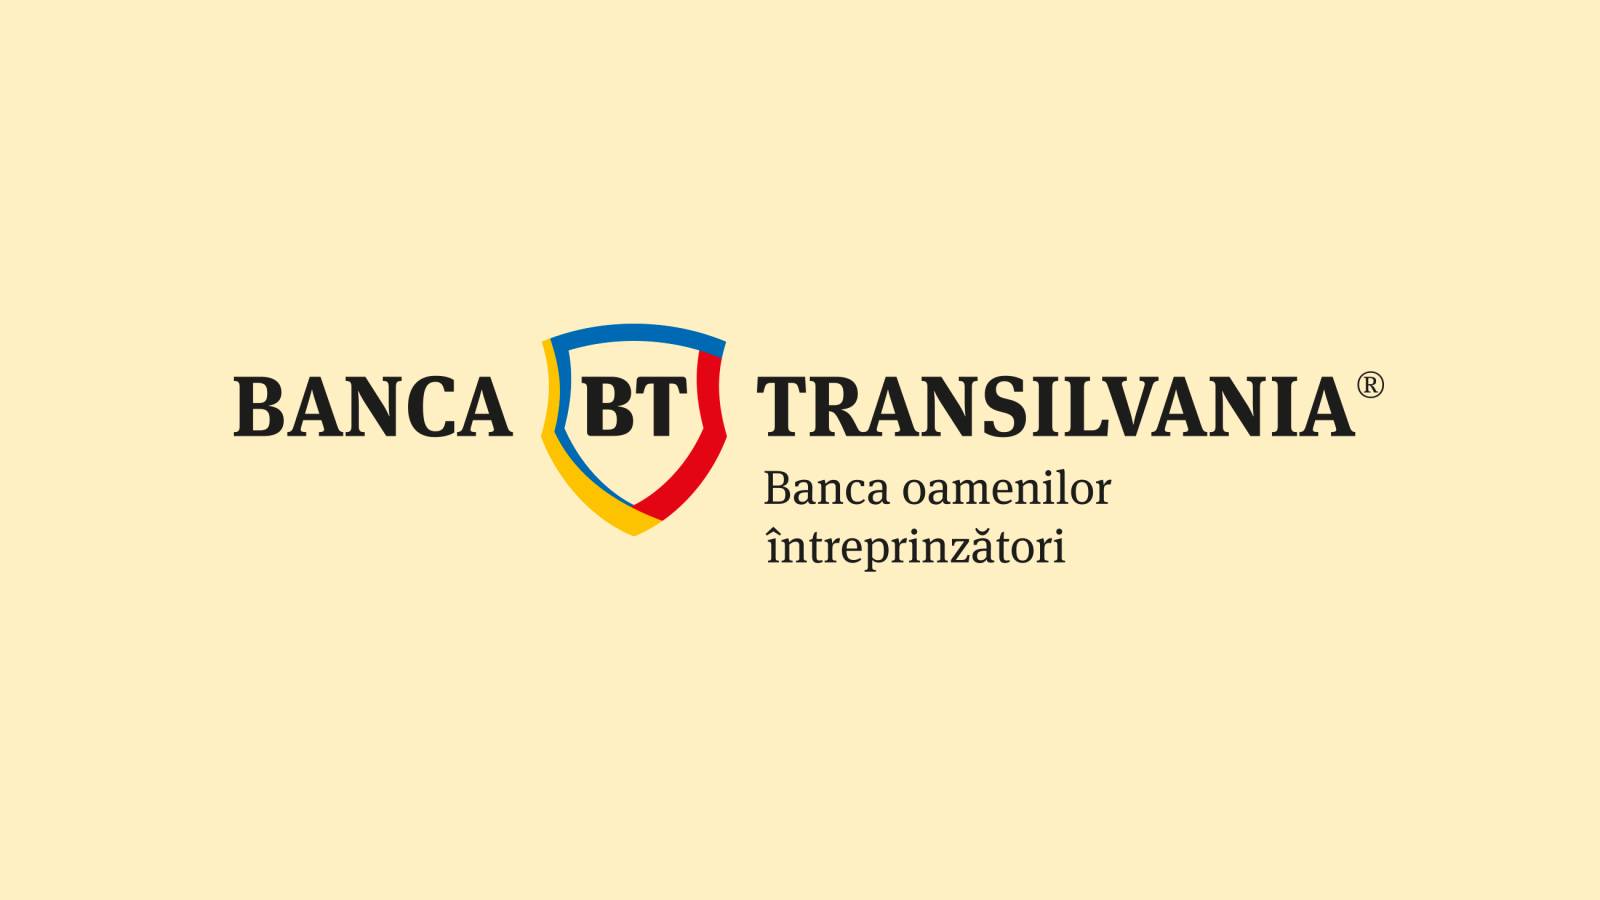 BANCA Transilvania LAATSTE MOMENT Aankondiging BELANGRIJK Wijzigingen Roemeense klanten